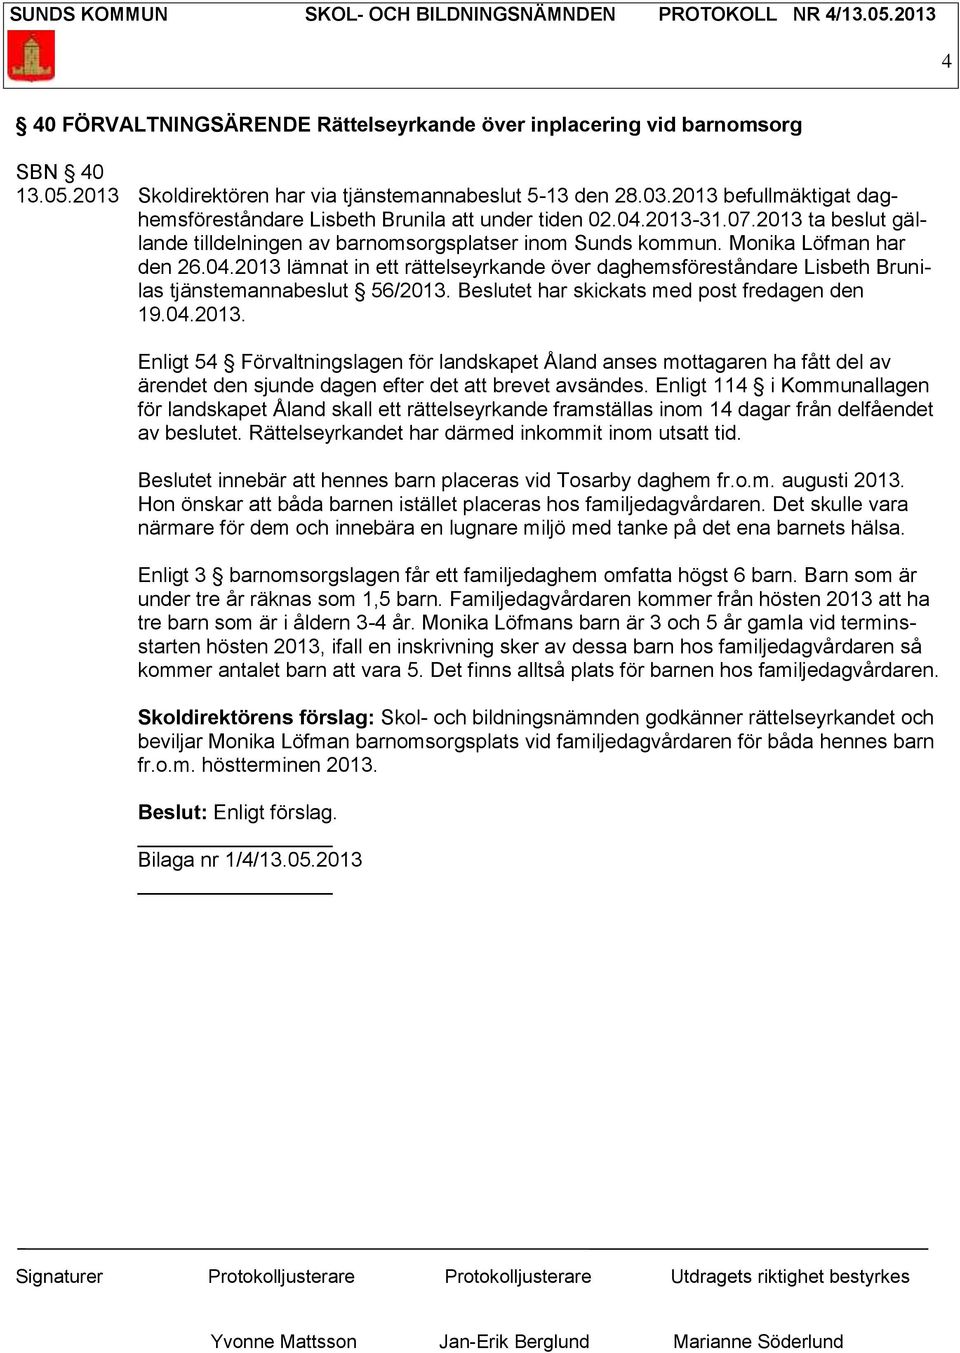 Beslutet har skickats med post fredagen den 19.04.2013. Enligt 54 Förvaltningslagen för landskapet Åland anses mottagaren ha fått del av ärendet den sjunde dagen efter det att brevet avsändes.